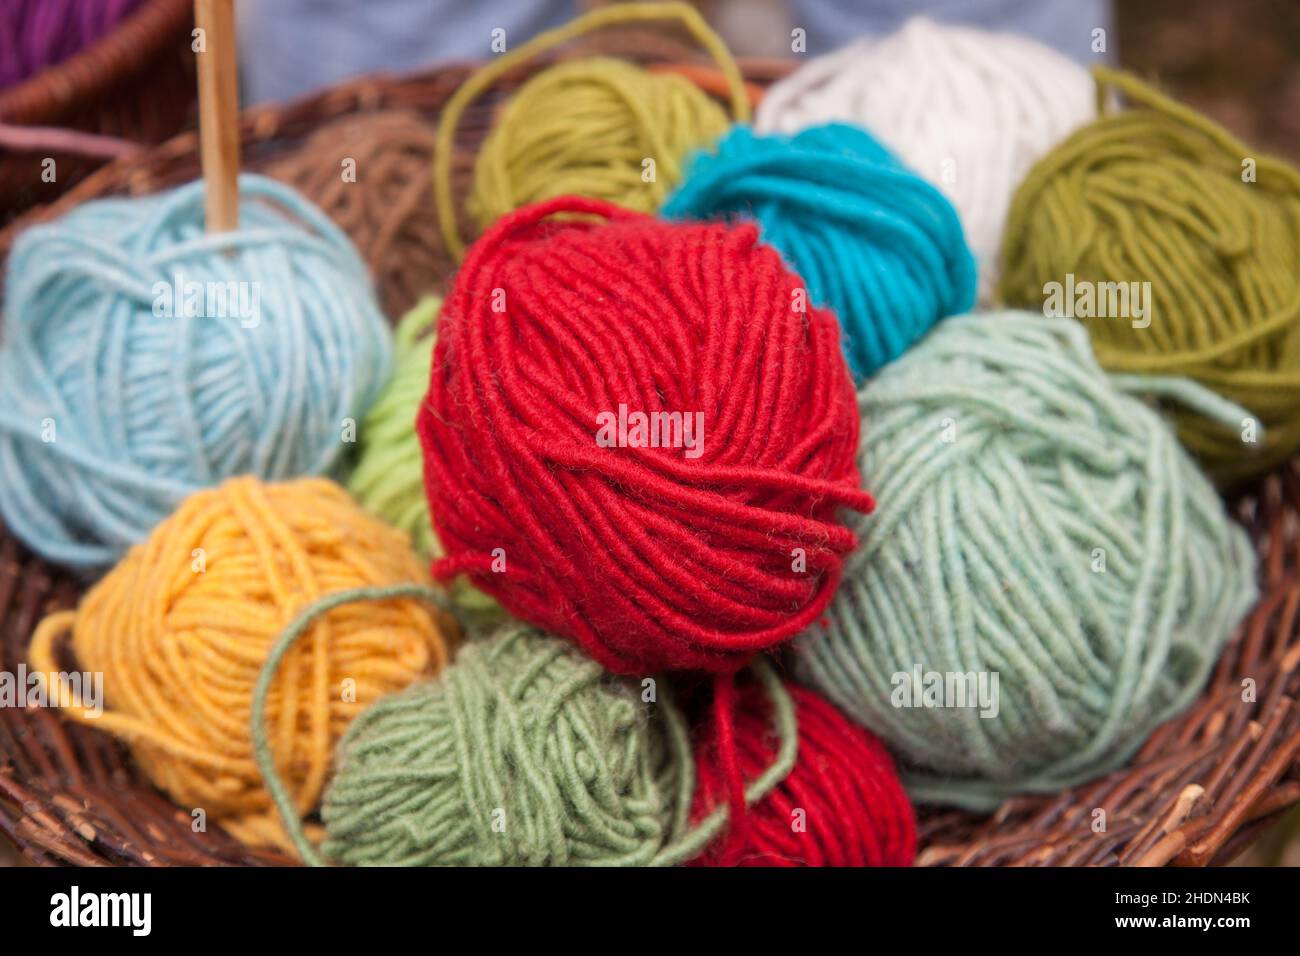 wool, knitting wool, wools, knitting wools Stock Photo